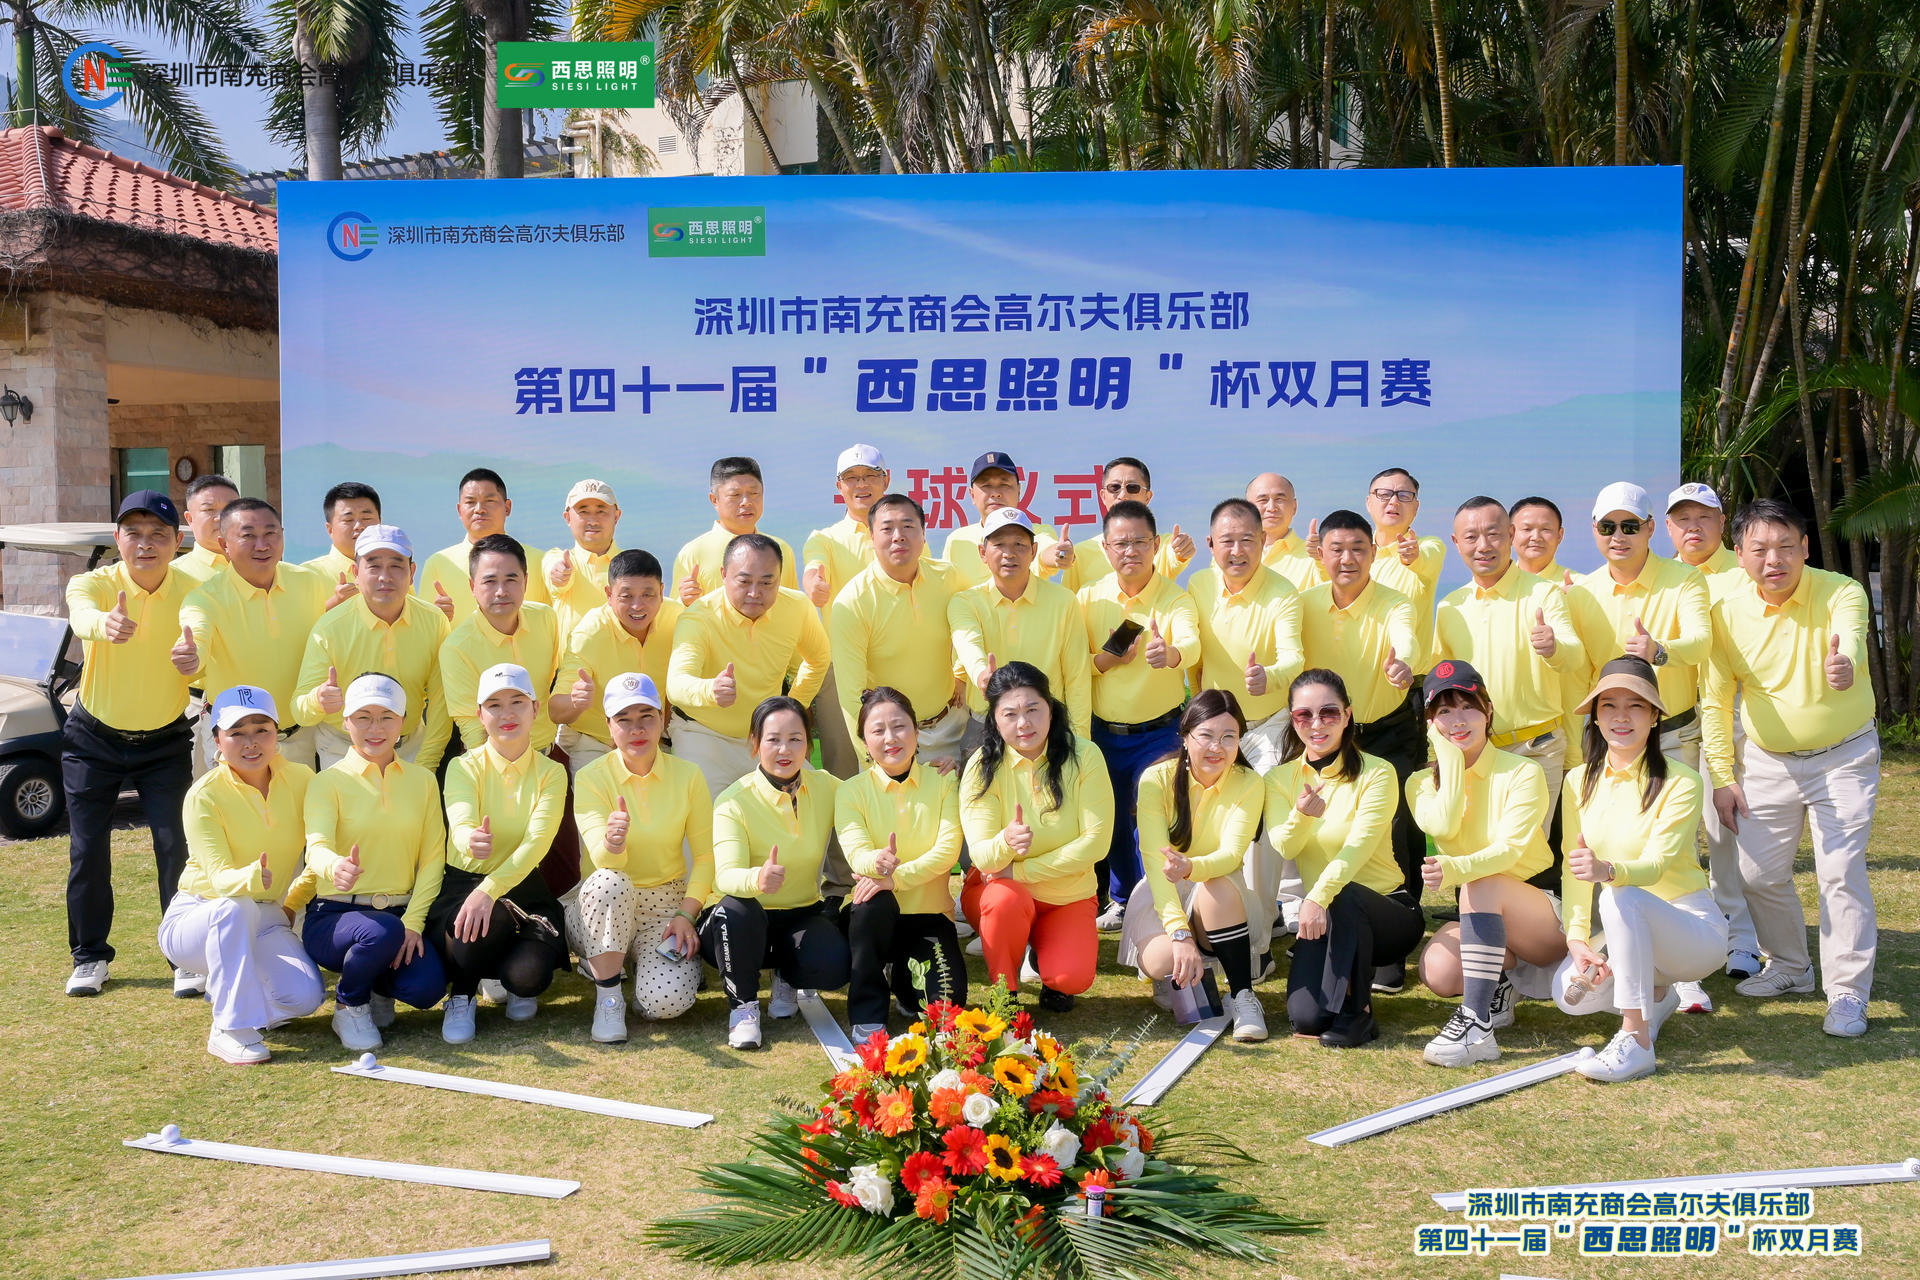 西思照明冠名赞助深圳南商高尔夫第四十一届“西思照明” 杯双月赛